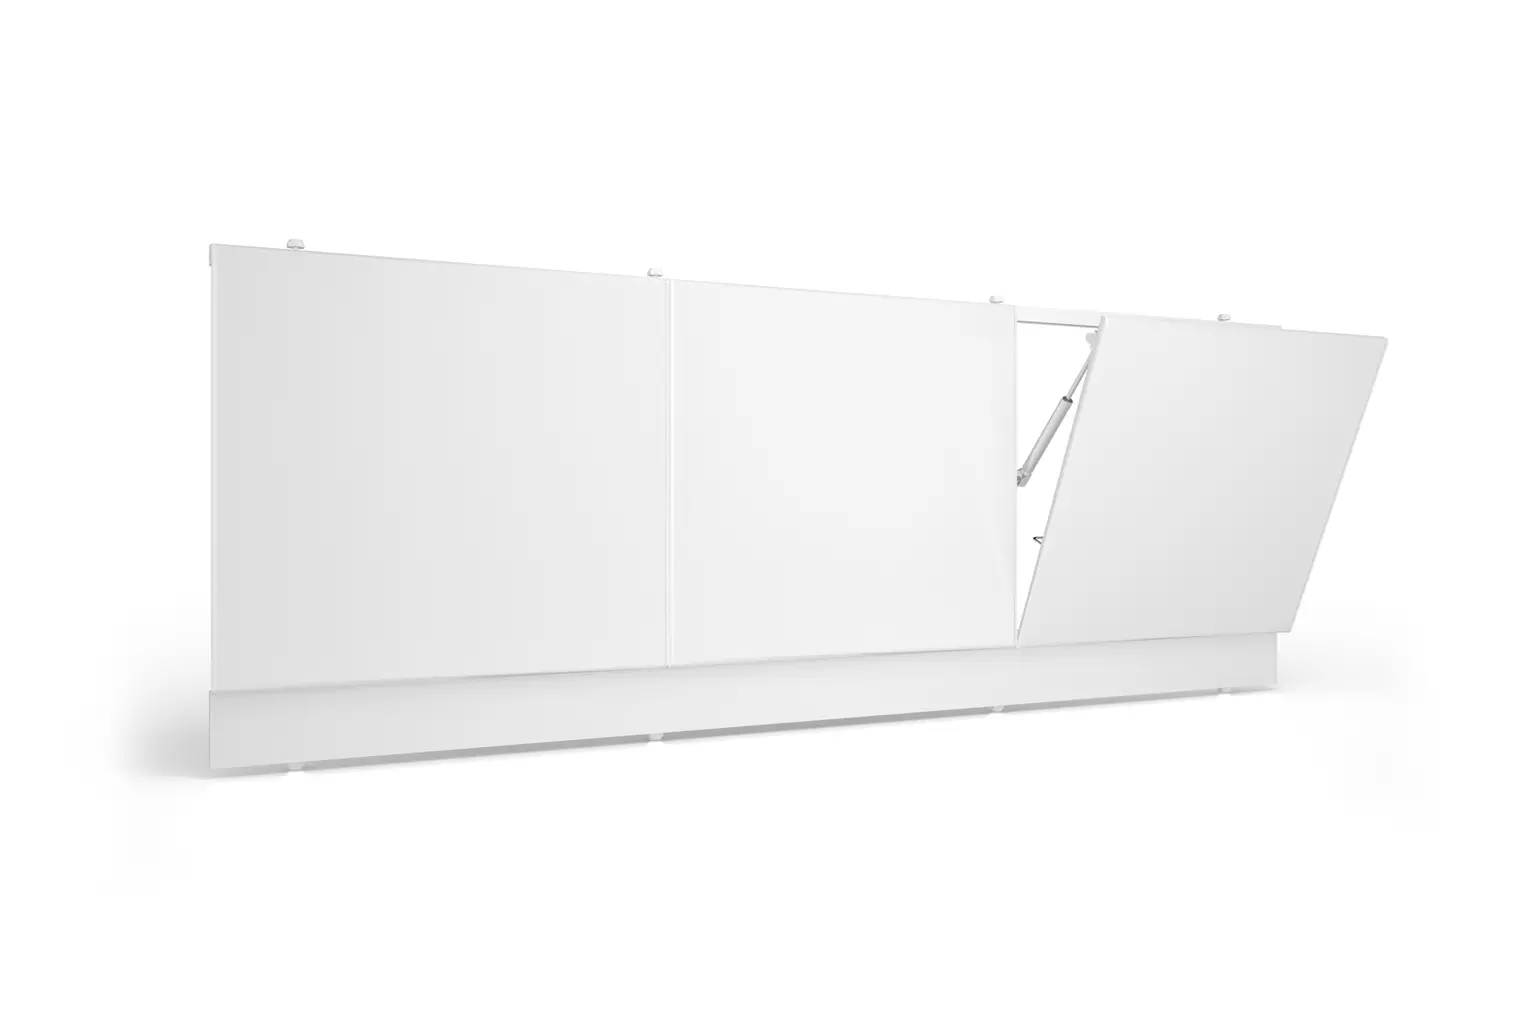 Экран с откидными дверцами 1490*540-580 (Белый)